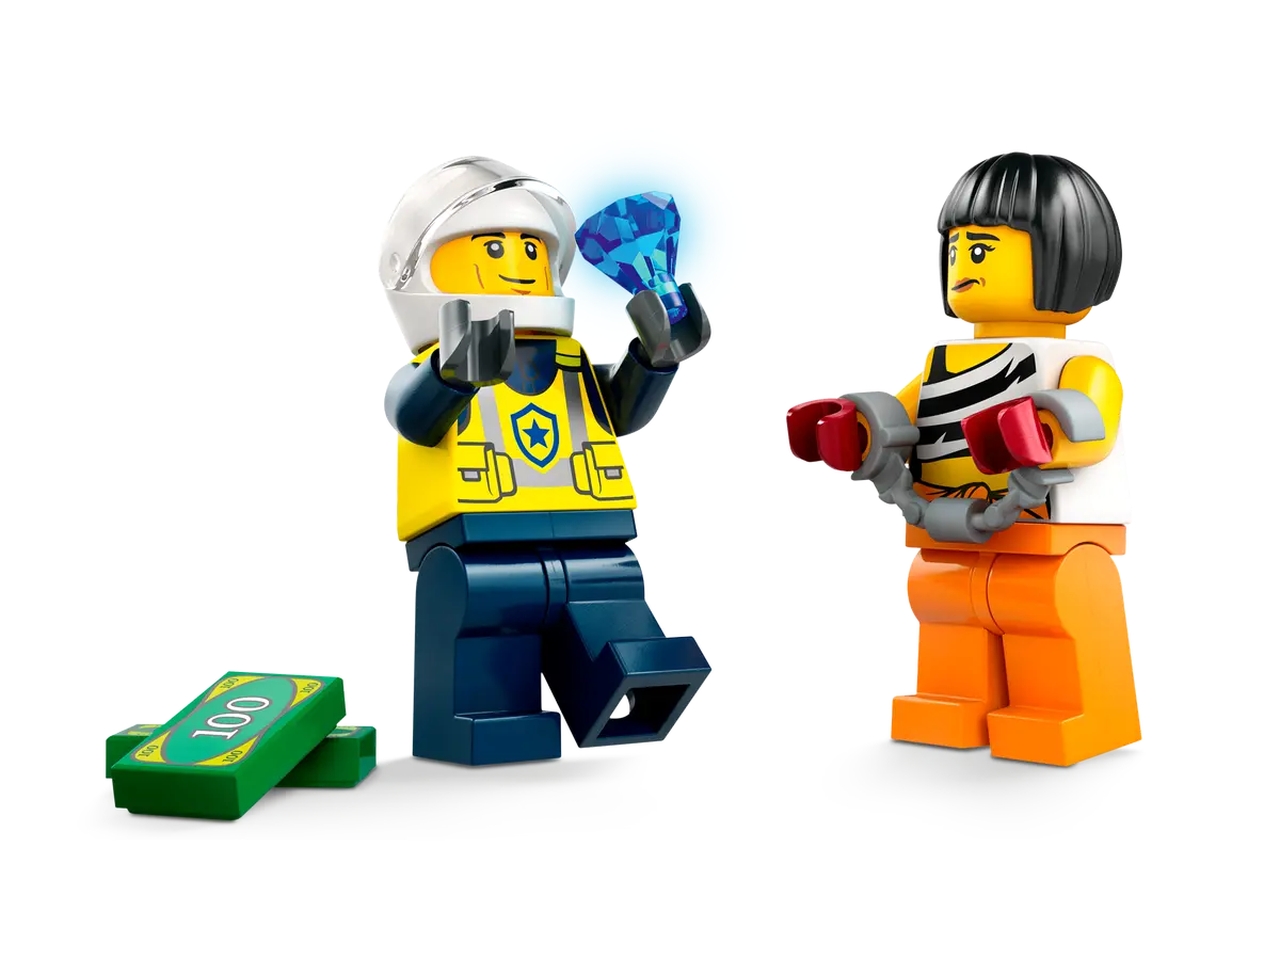 LEGO City 60415 - Inseguimento della macchina da corsa